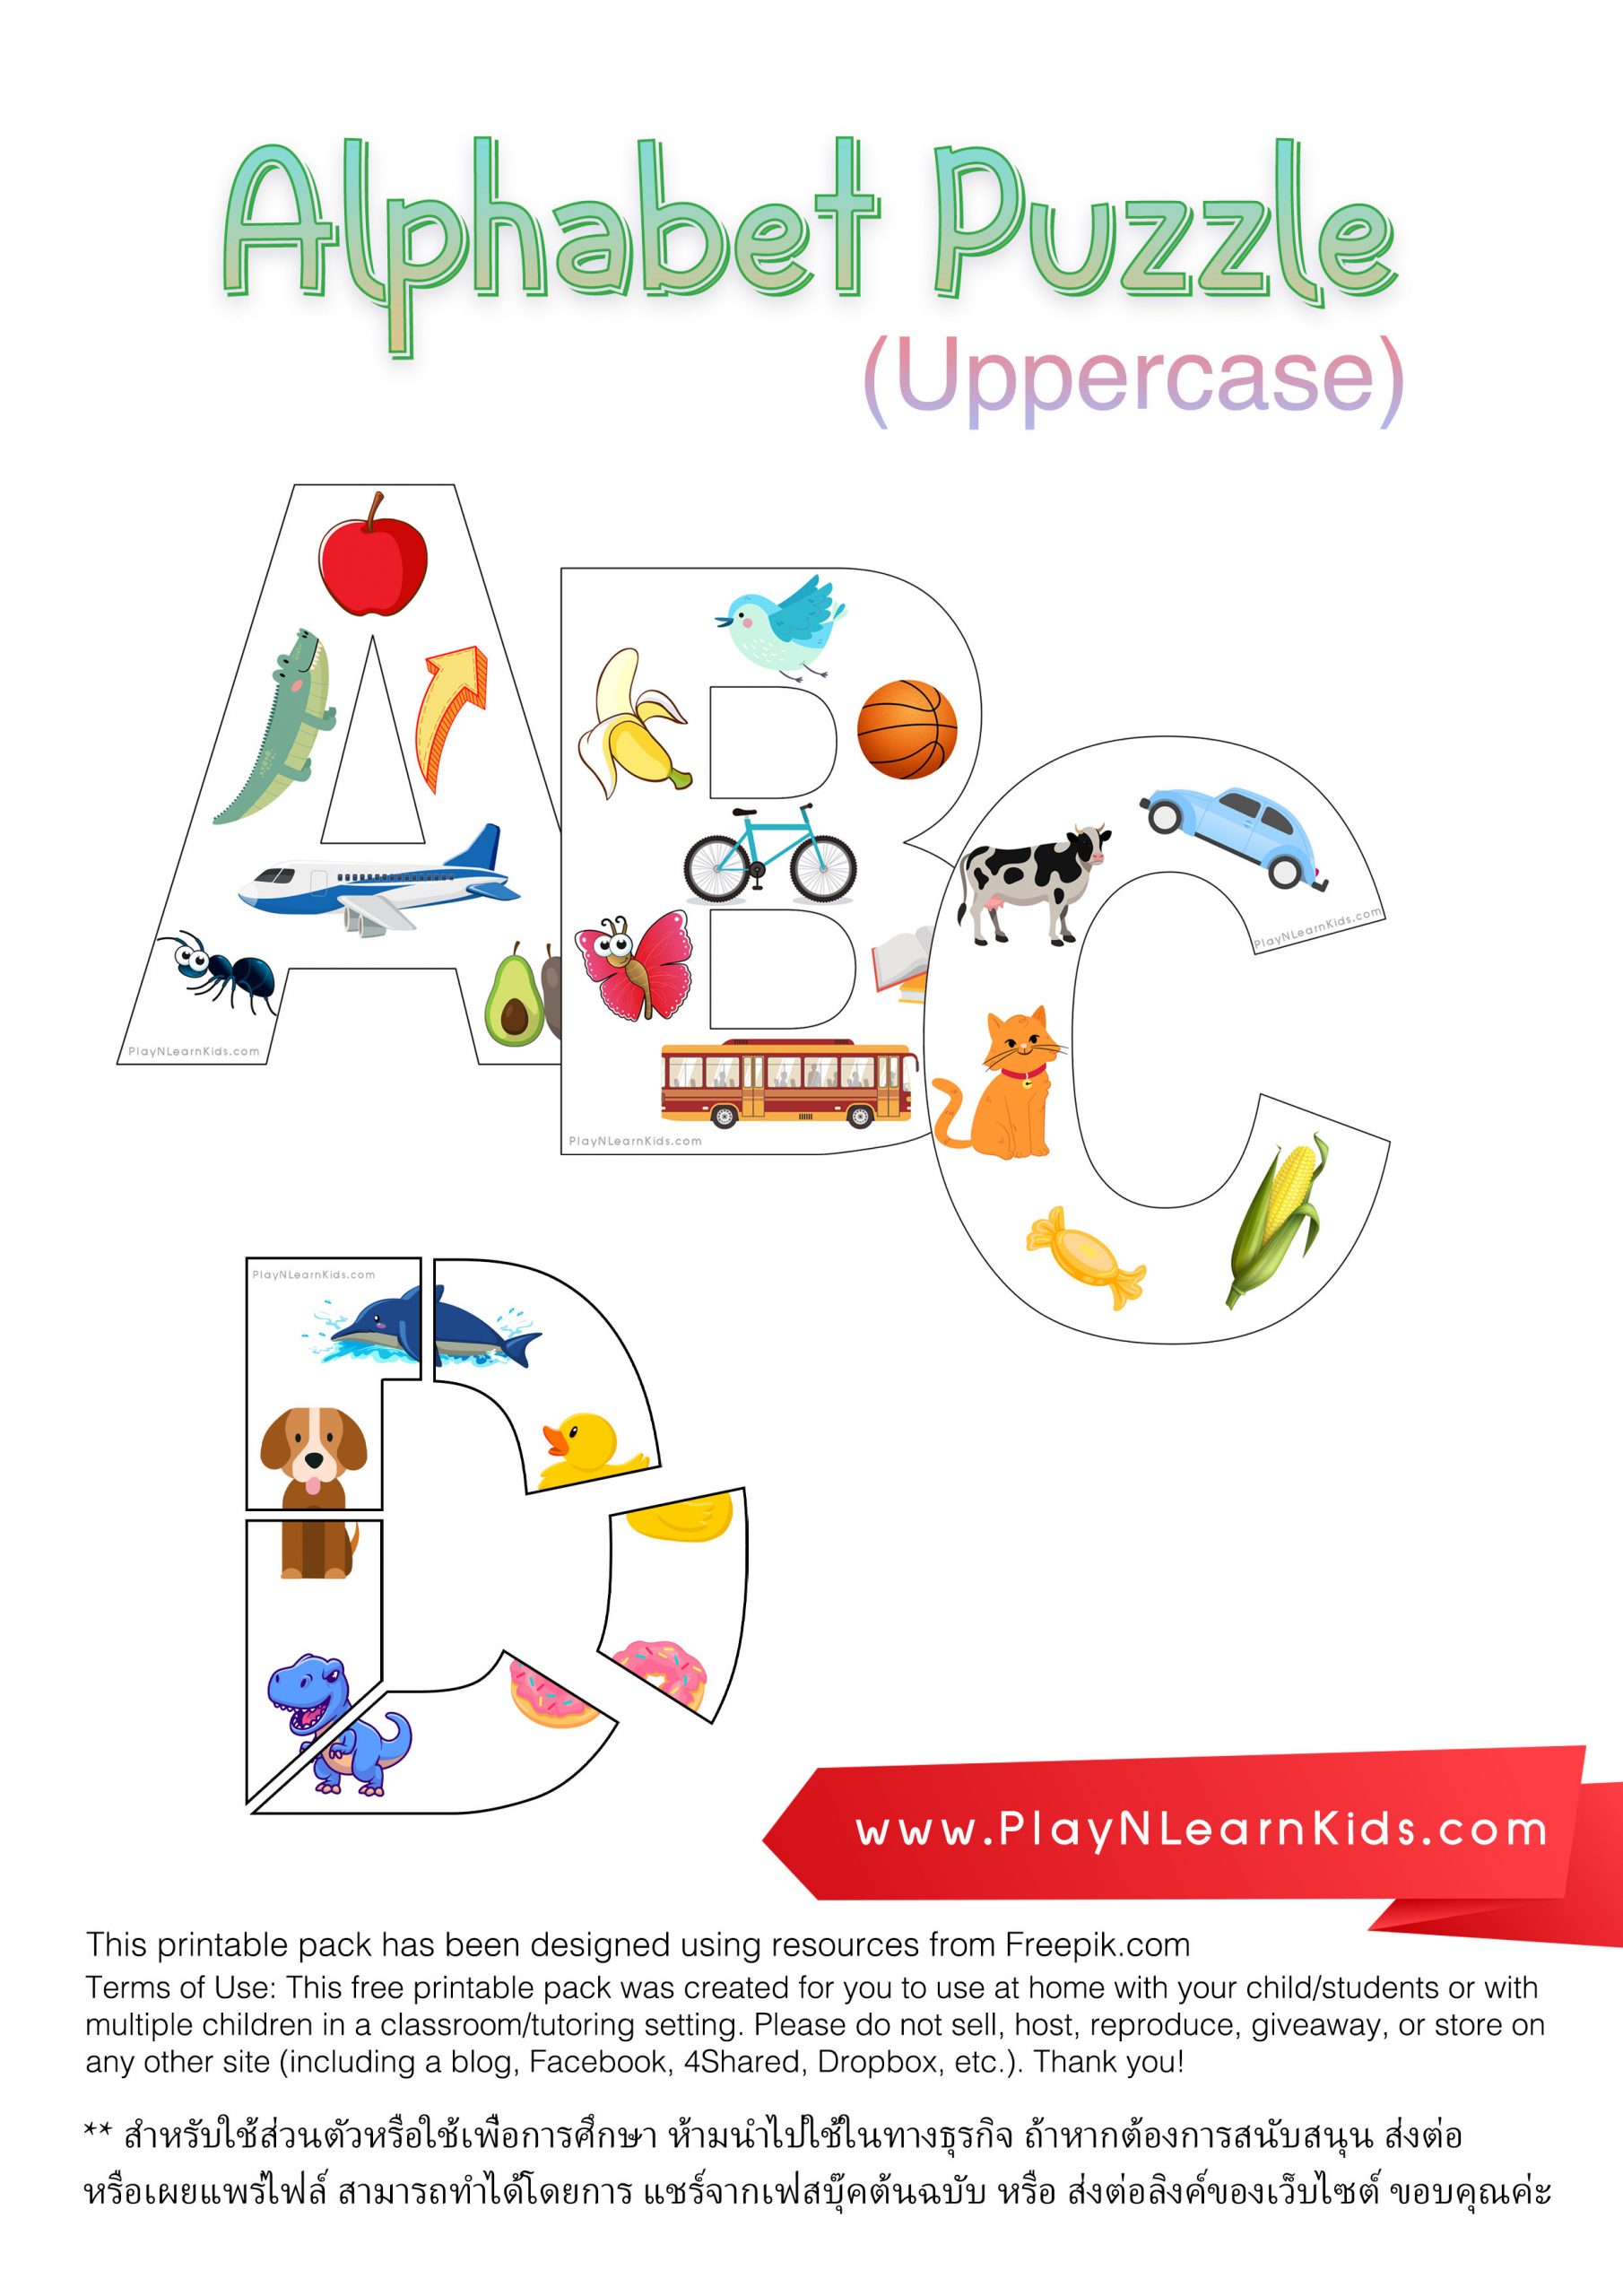 ดาวโหลด – Alphabet Puzzle Uppercase